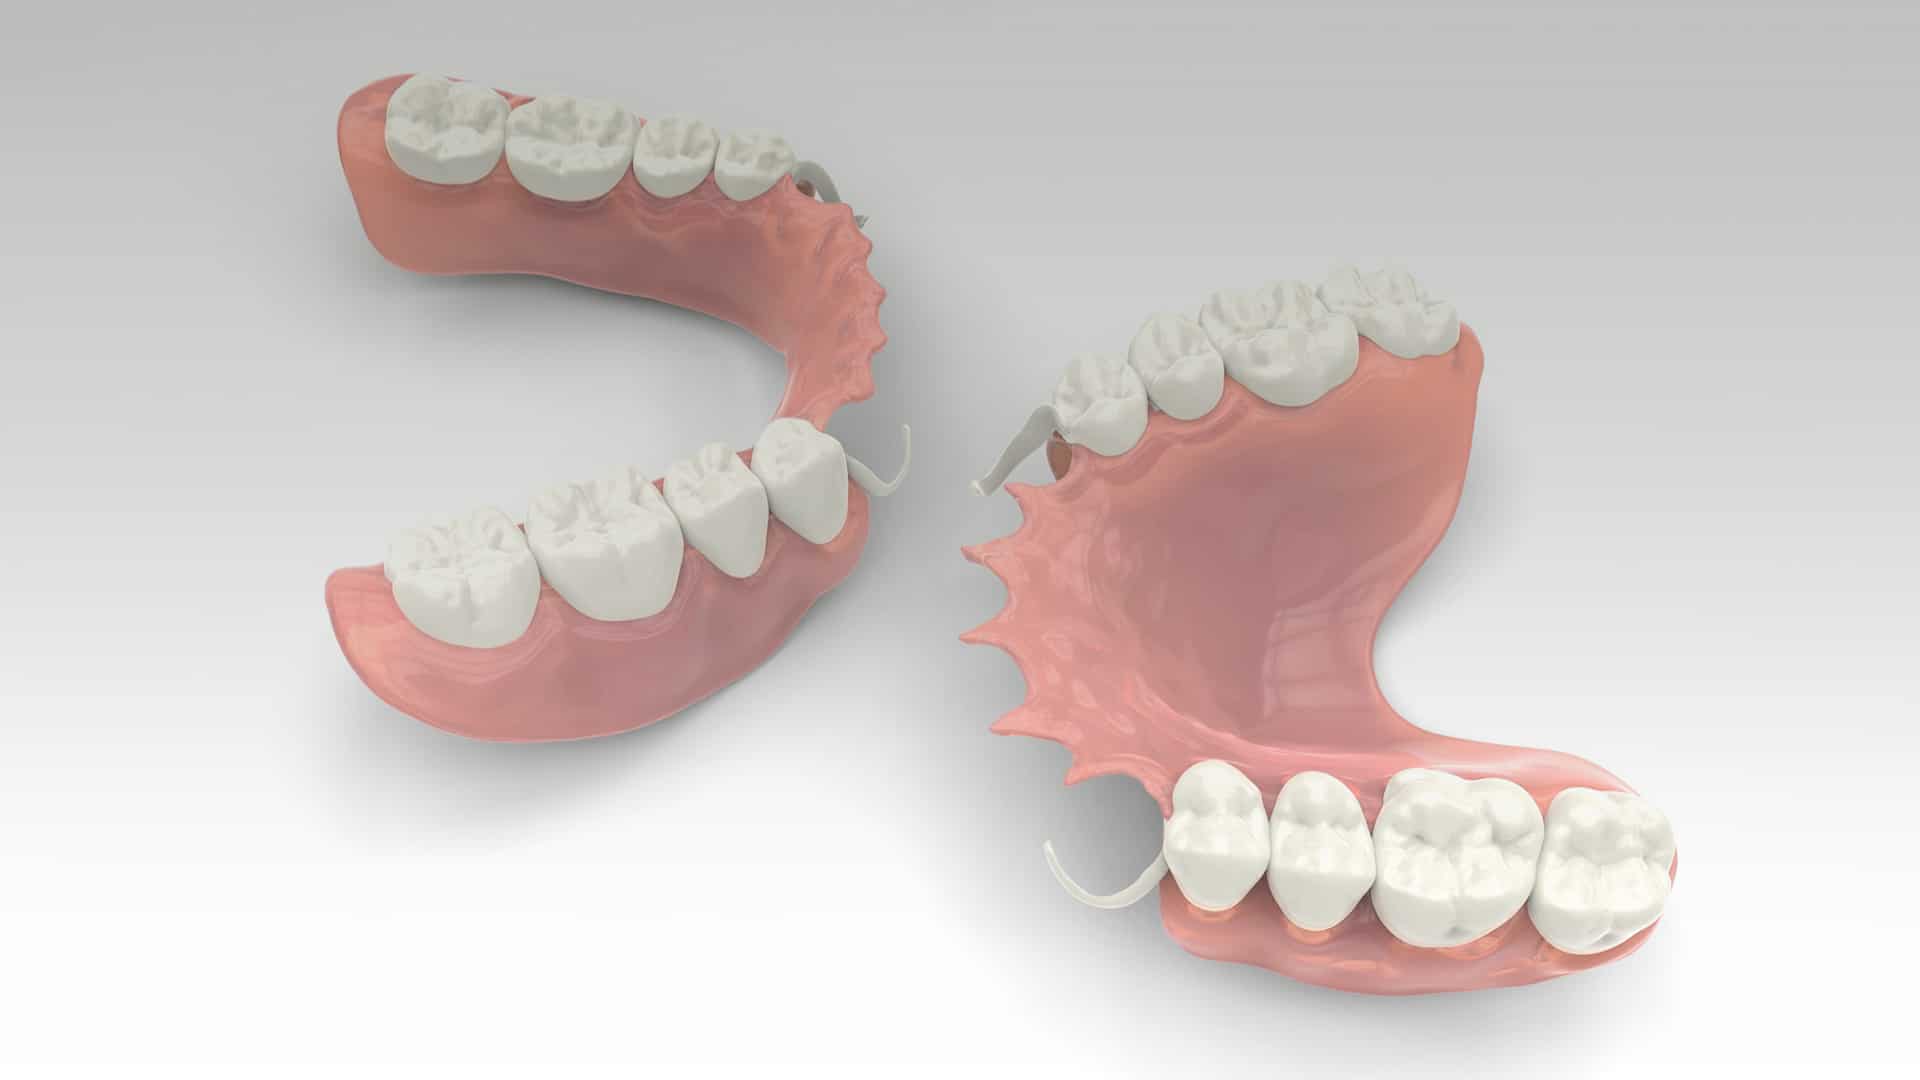 Tratamiento de prótesis dentales removibles